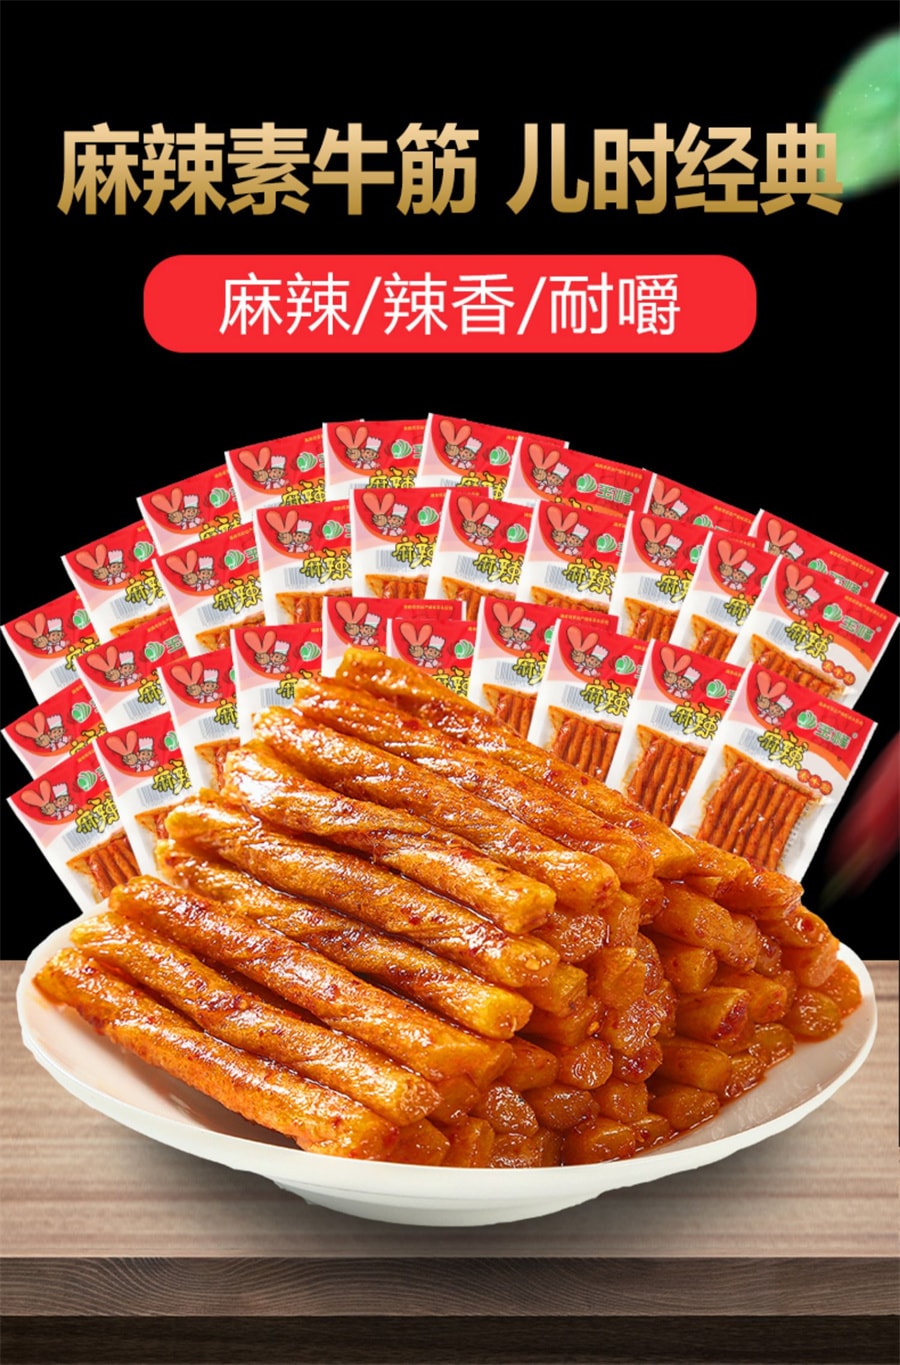 【中国直邮】玉峰 辣条素牛筋网红小零食儿时湖南特产16g/包